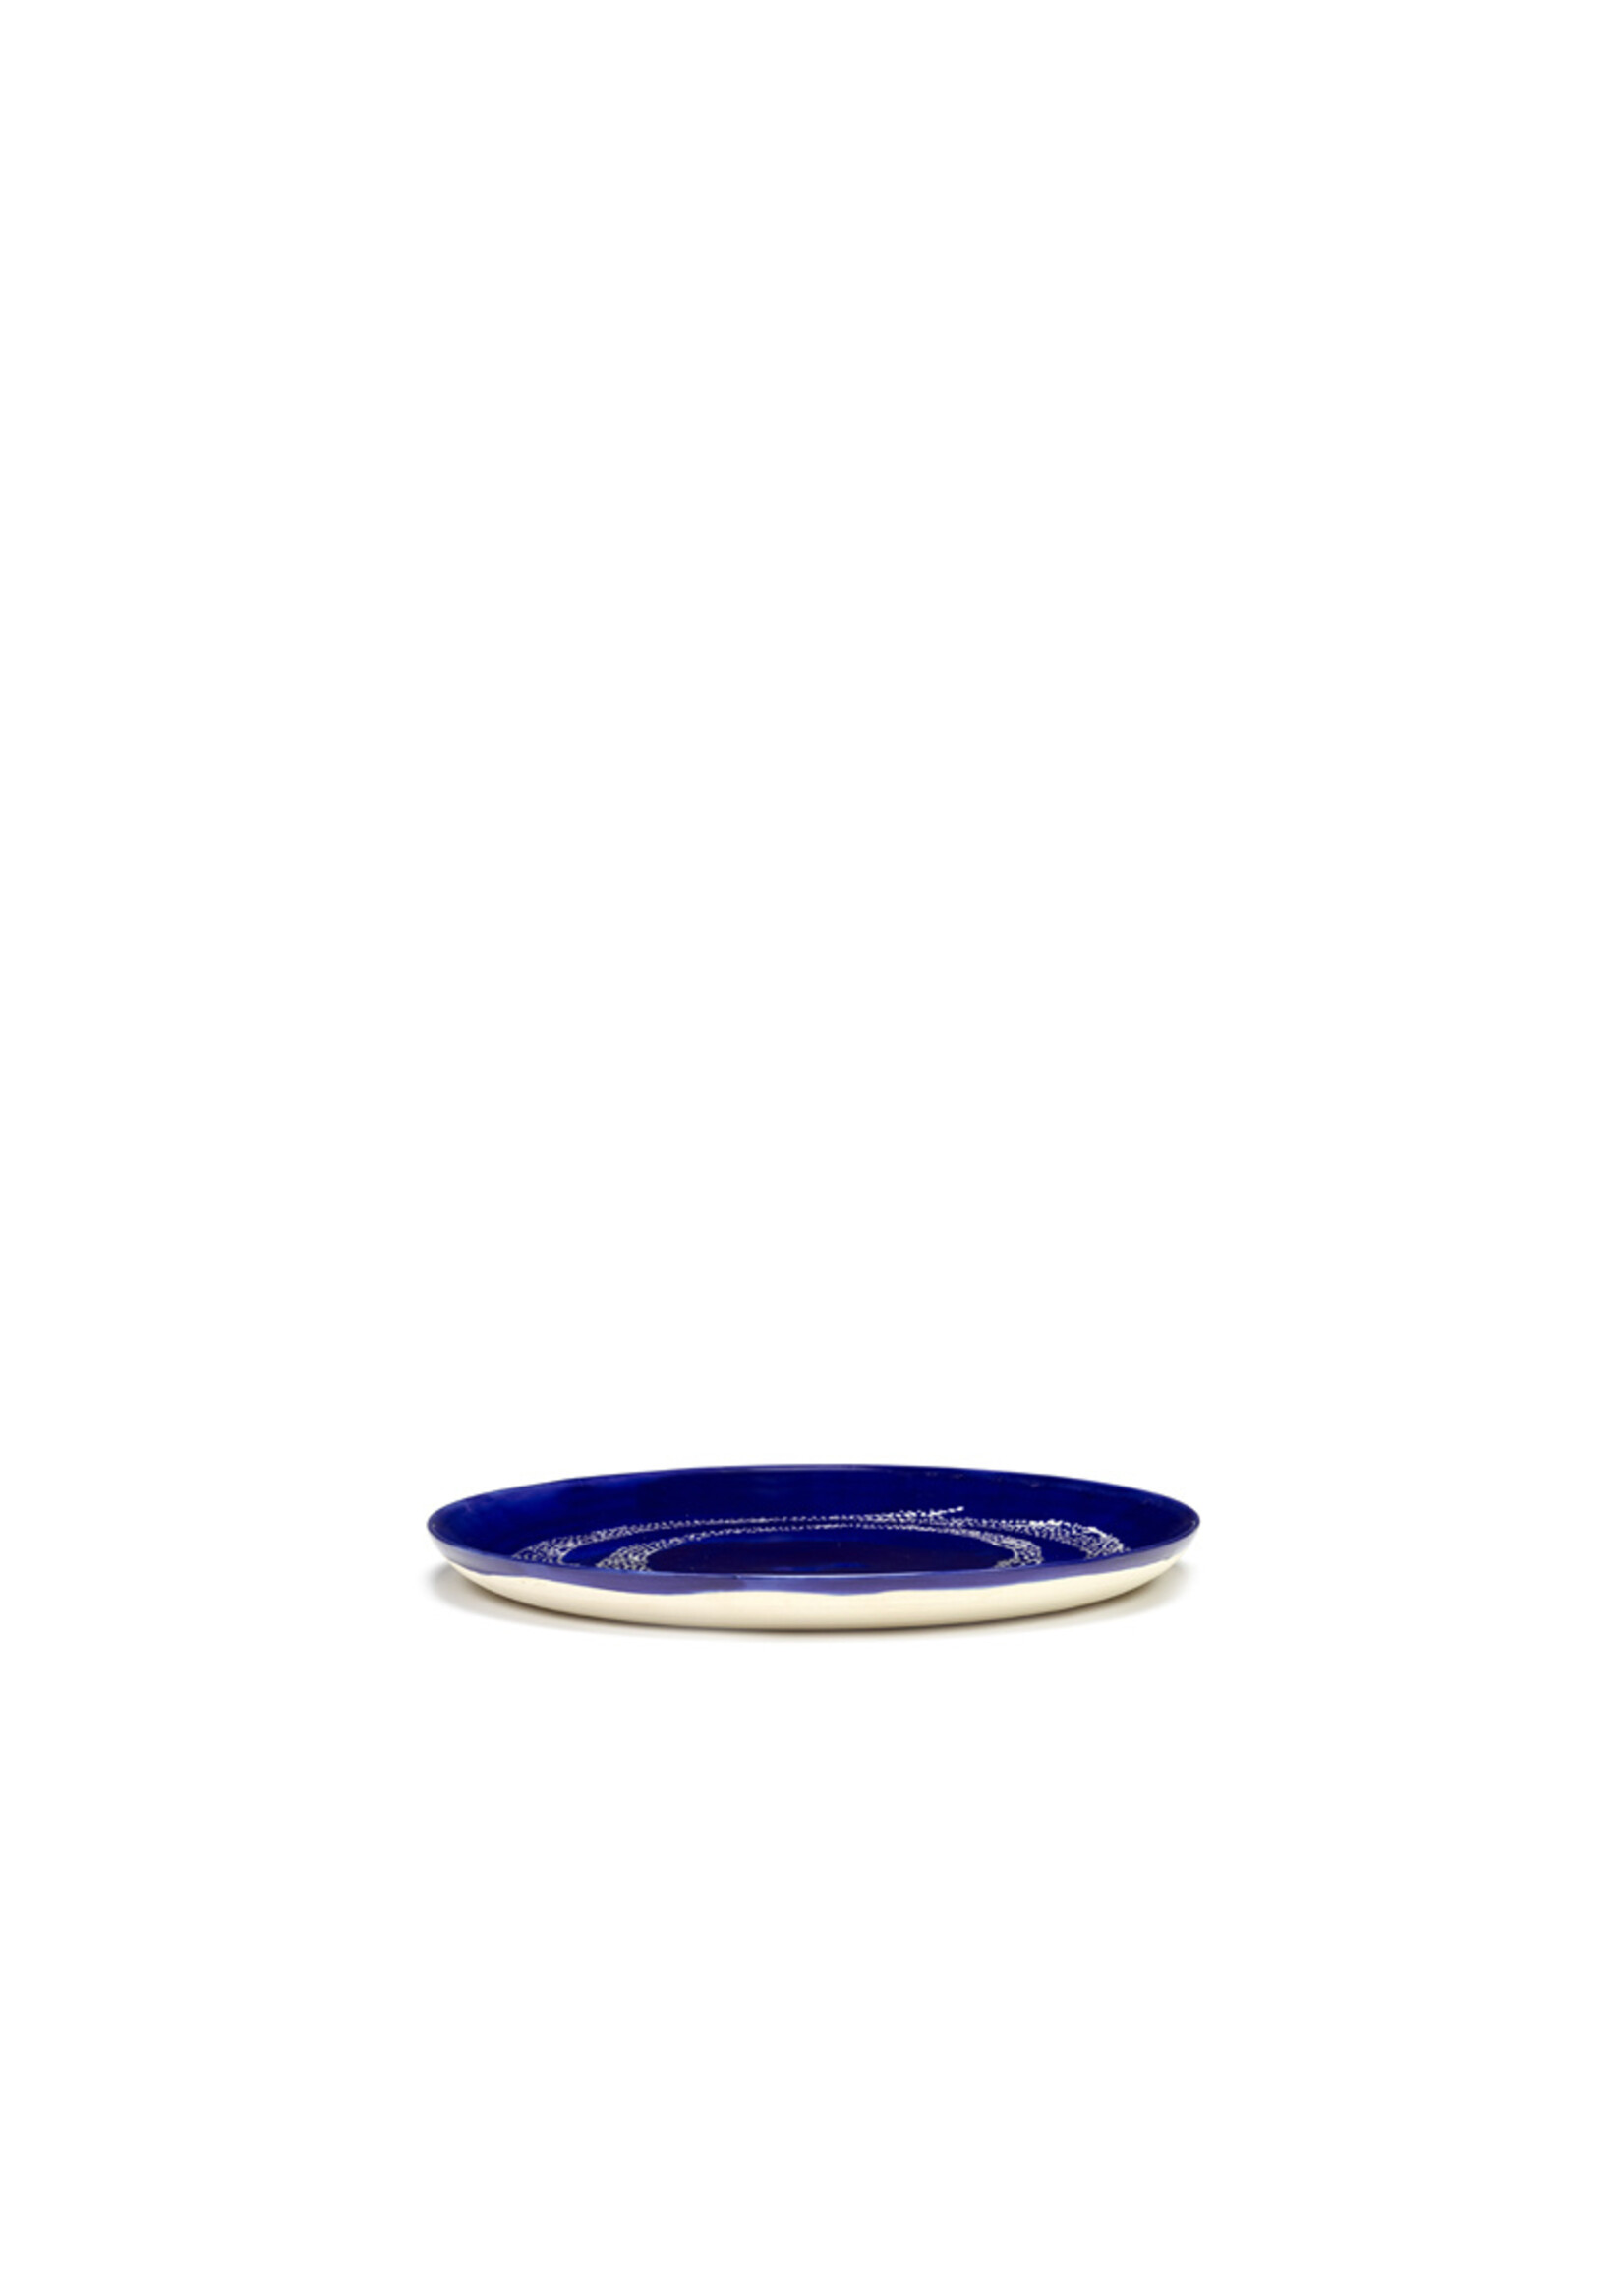 Serax Feast - Laag Bord - Lapis Lazuli Swirl Dots Wit - D26